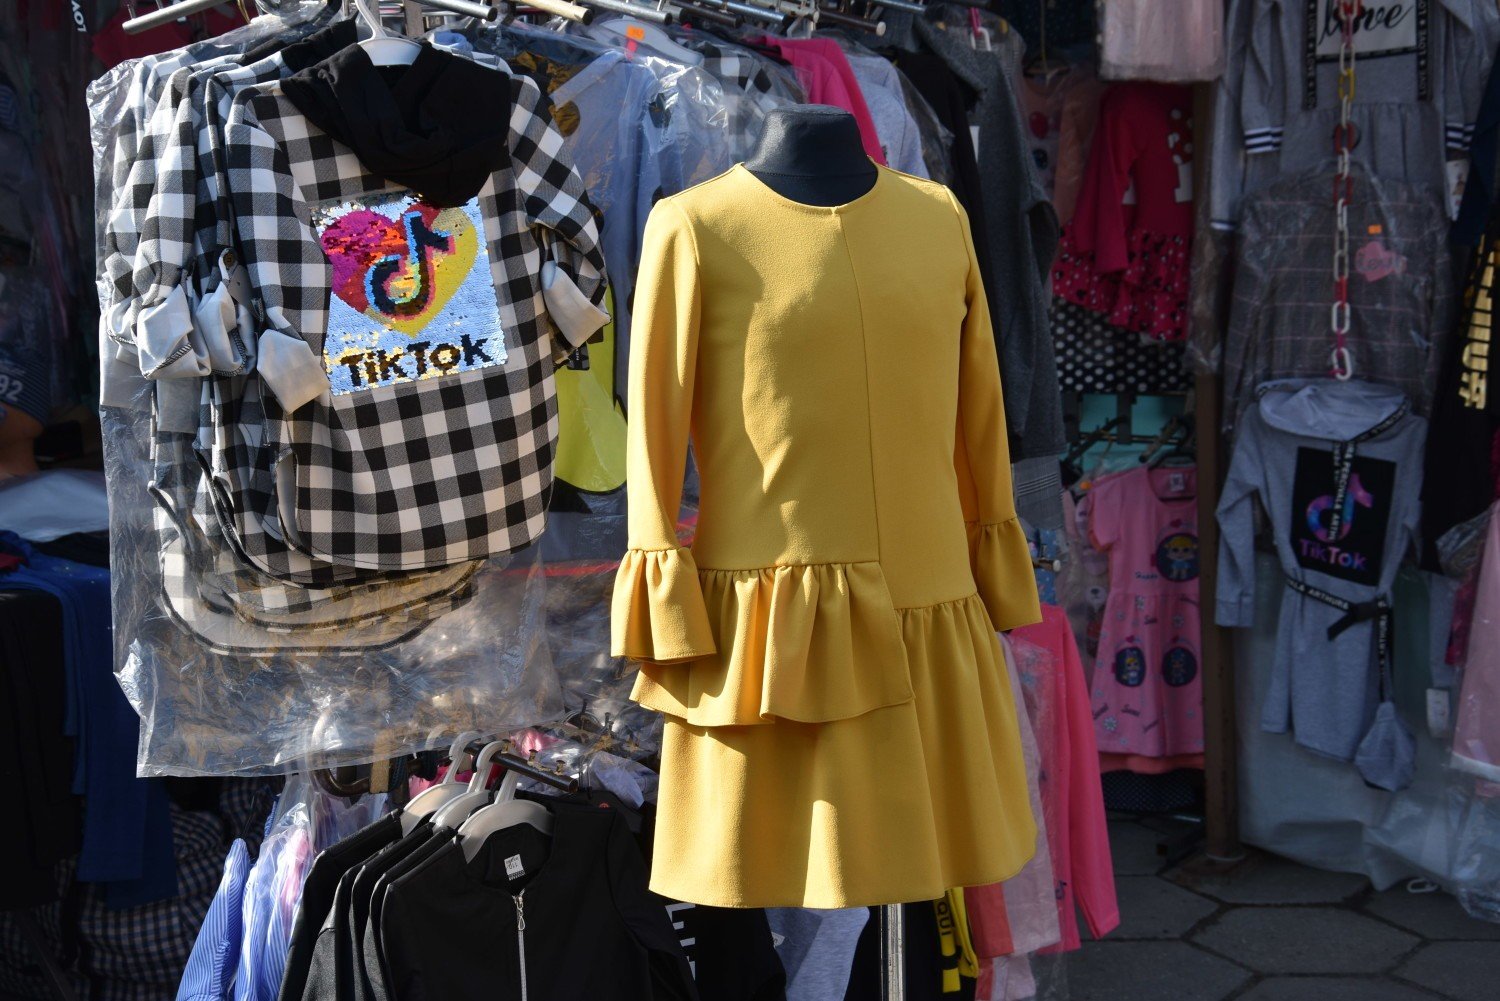 Wiosenna moda na targu w Rybniku - zobacz ZDJĘCIA. Nowa kolekcja już jest,  jednak ludzi mało. Sprawdź CENY | Rybnik Nasze Miasto